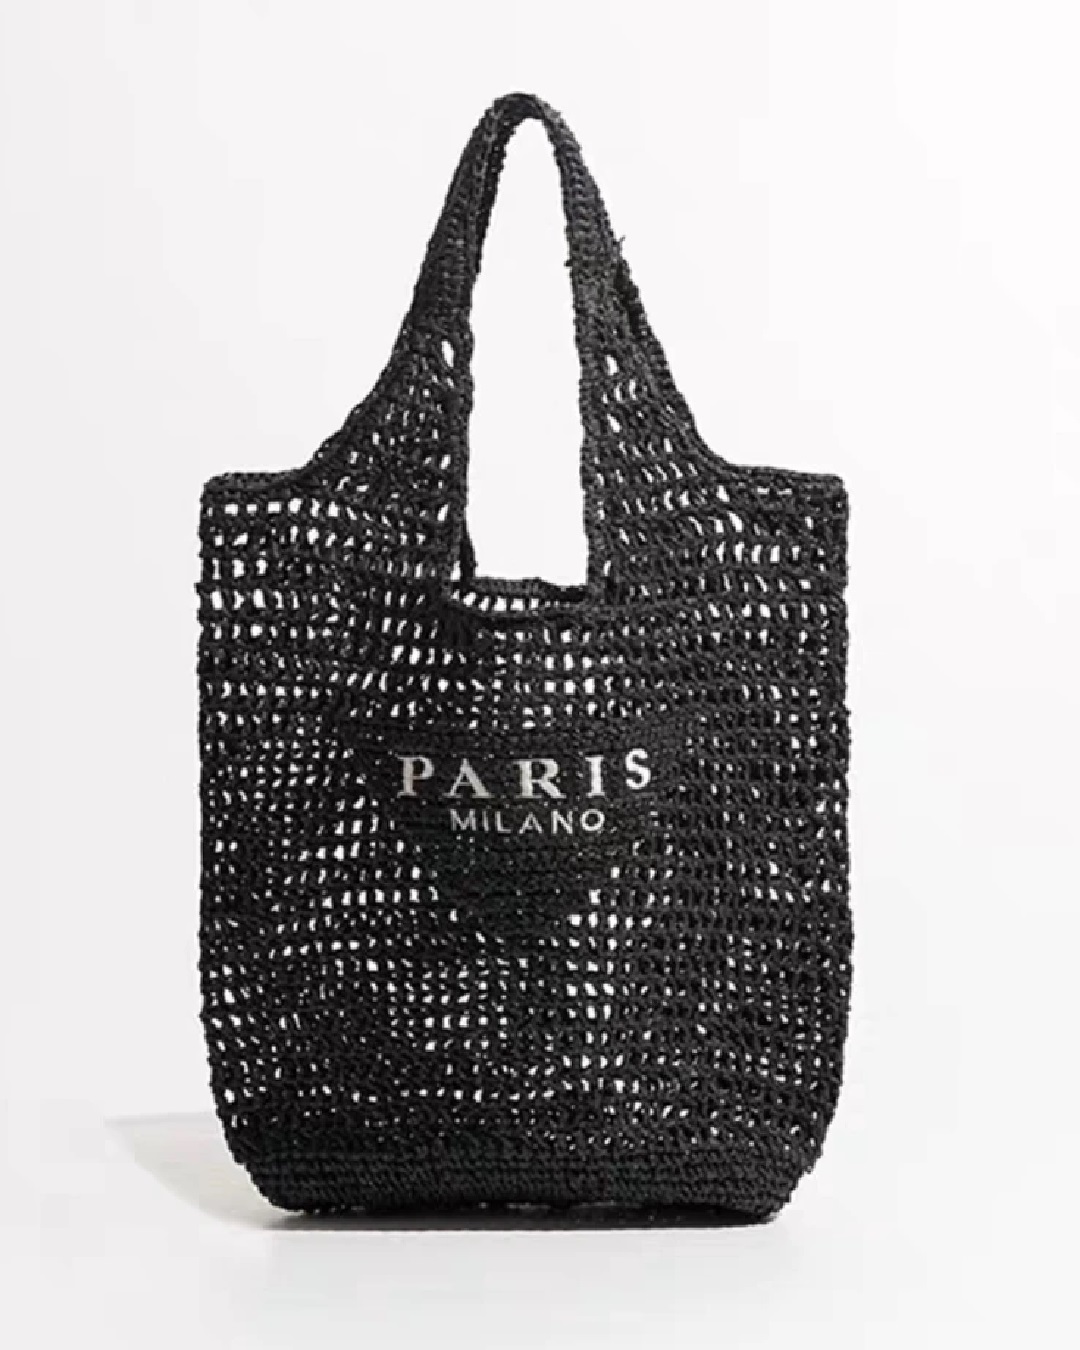 Paris tote bag in black